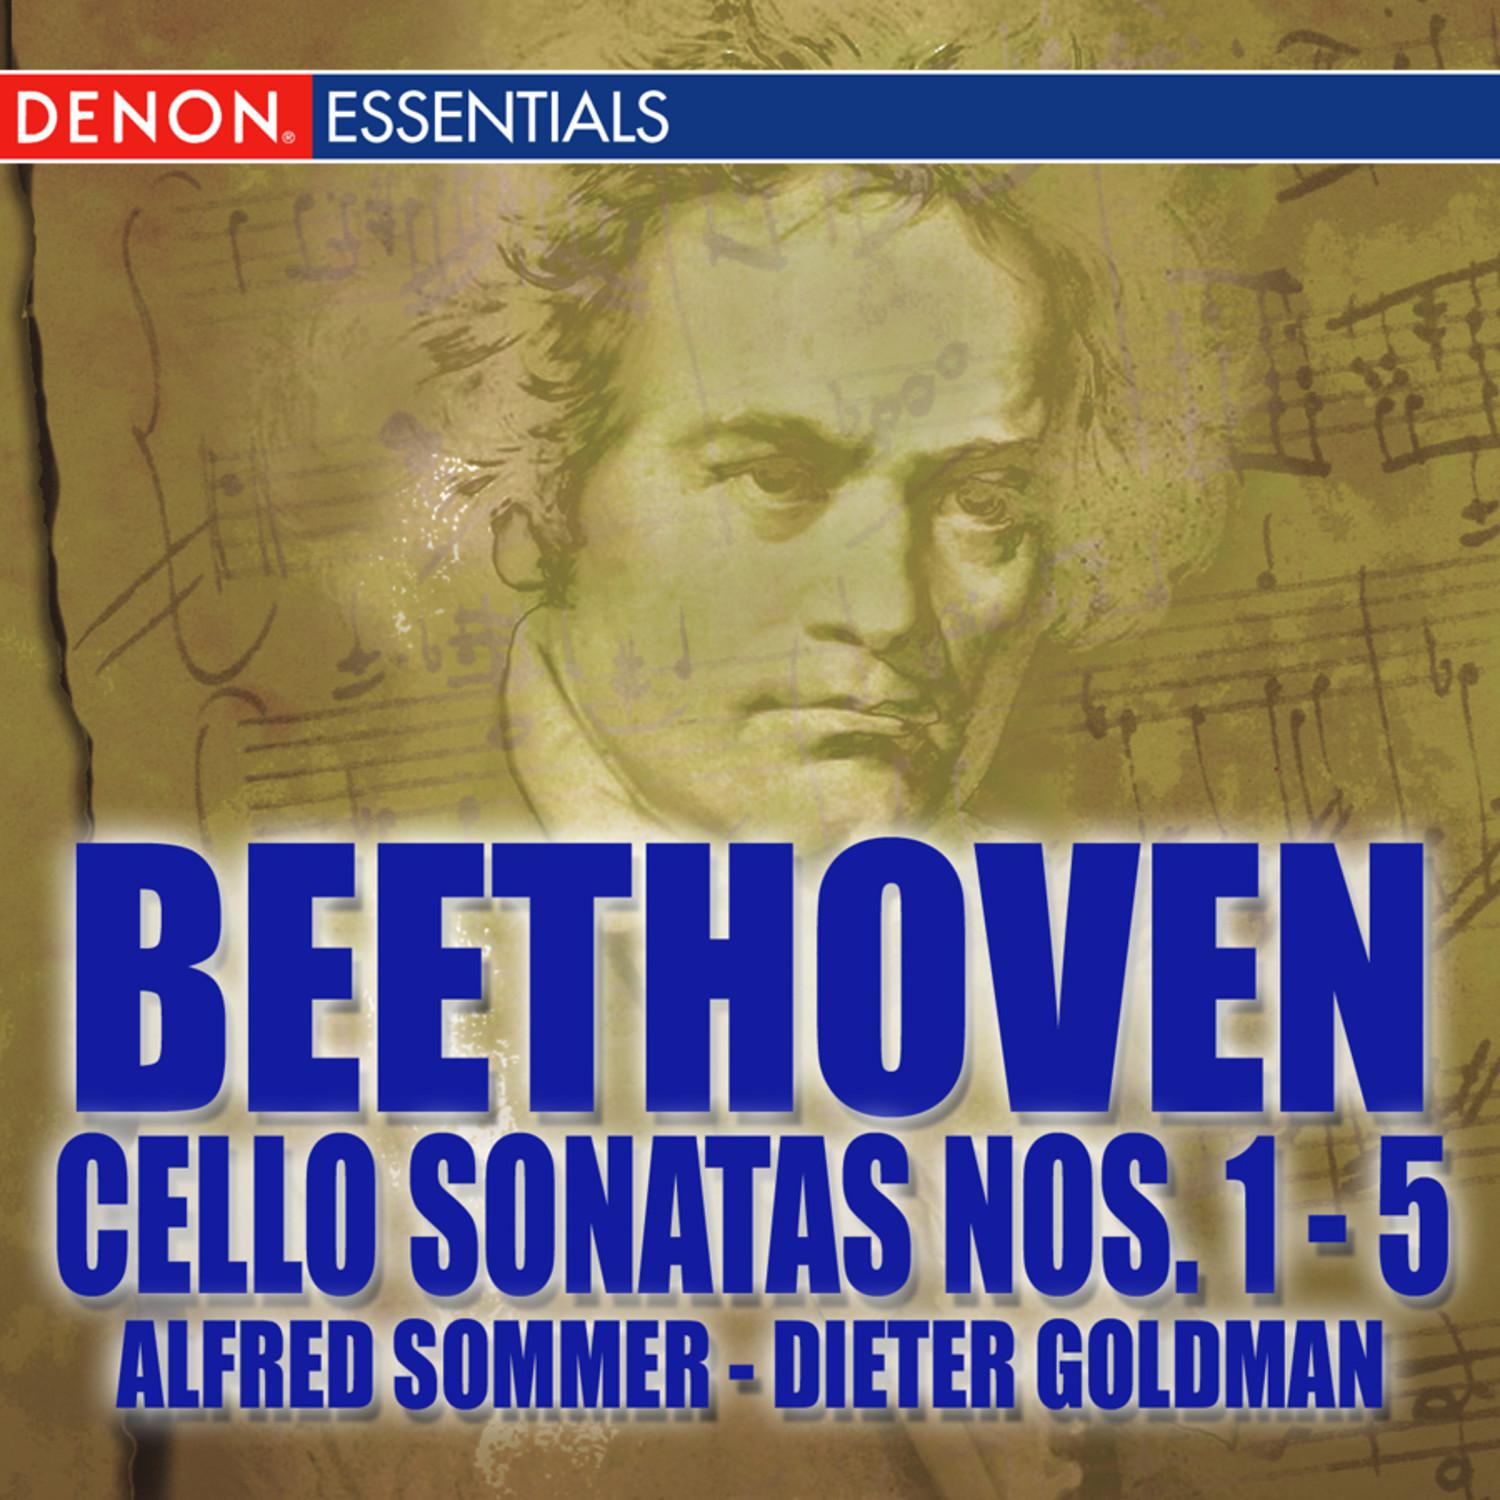 Cello Sonata No. 1 in F Major, Op. 5: Adagio sostenuto - Allegro - Rondo - Allegro vivace